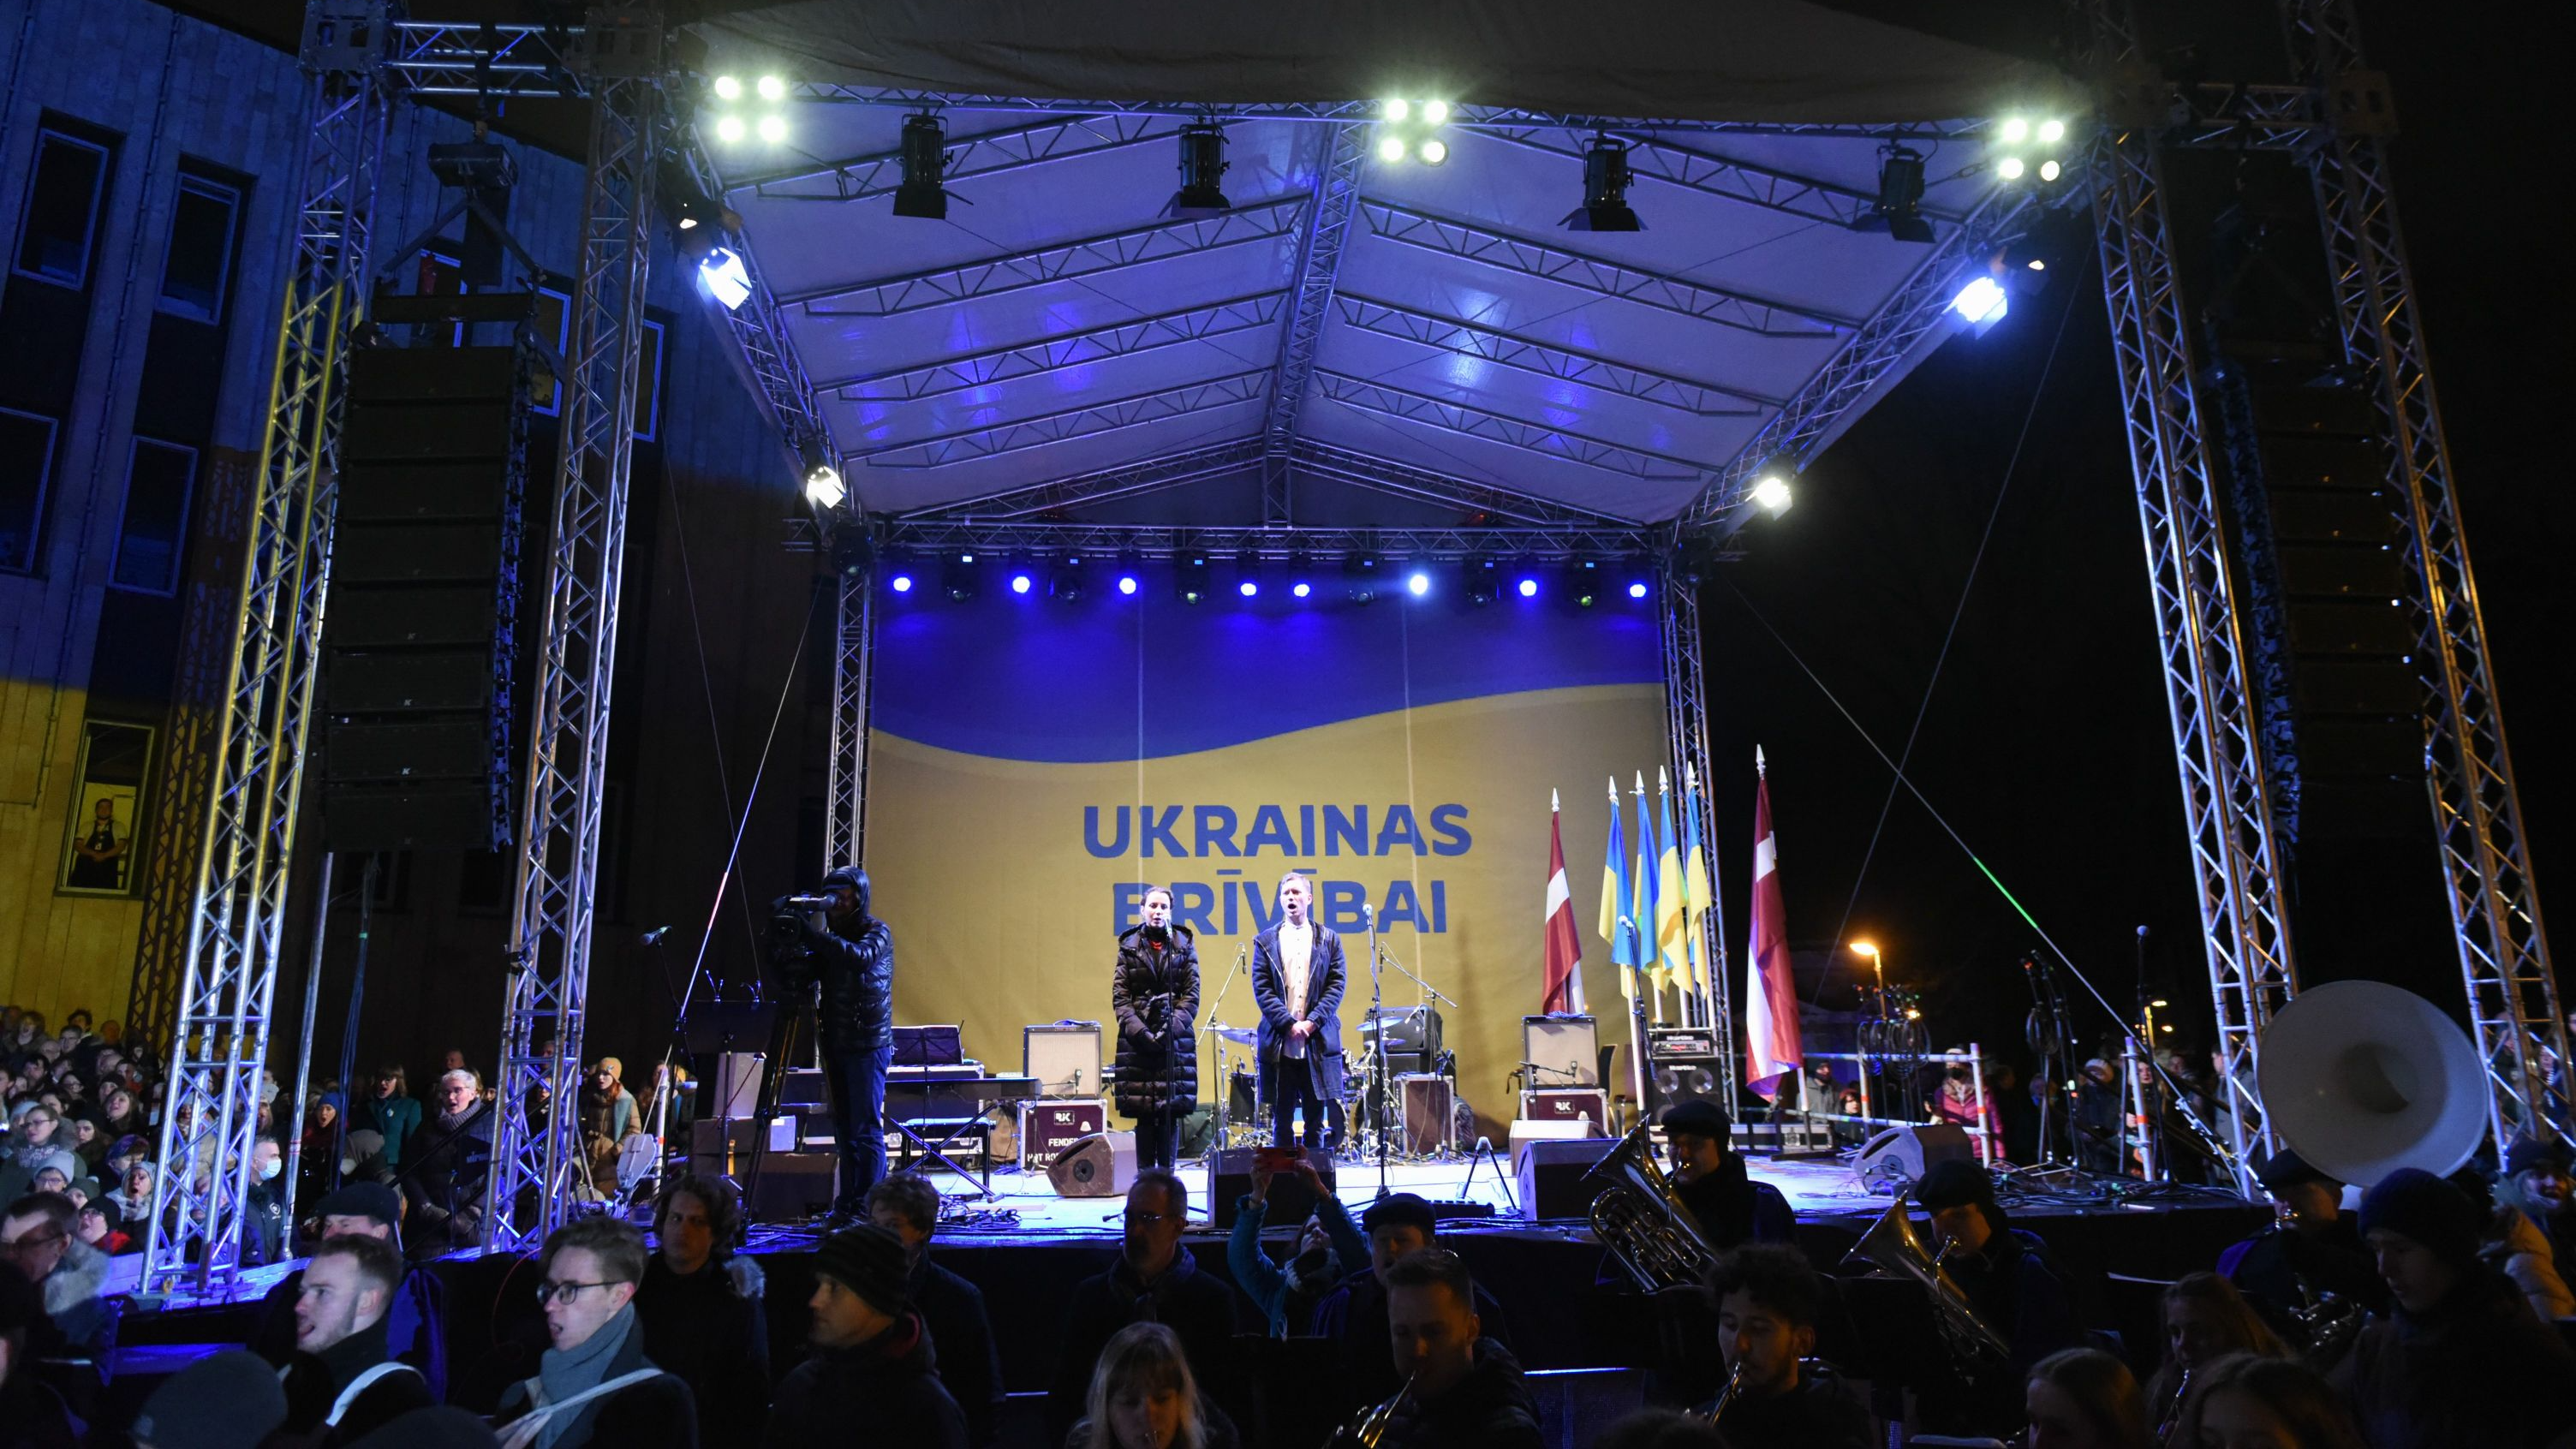 Pie Kongresu nama Ukrainas atbalstam notika sirsnīgs koncerts "Ukrainas brīvībai"